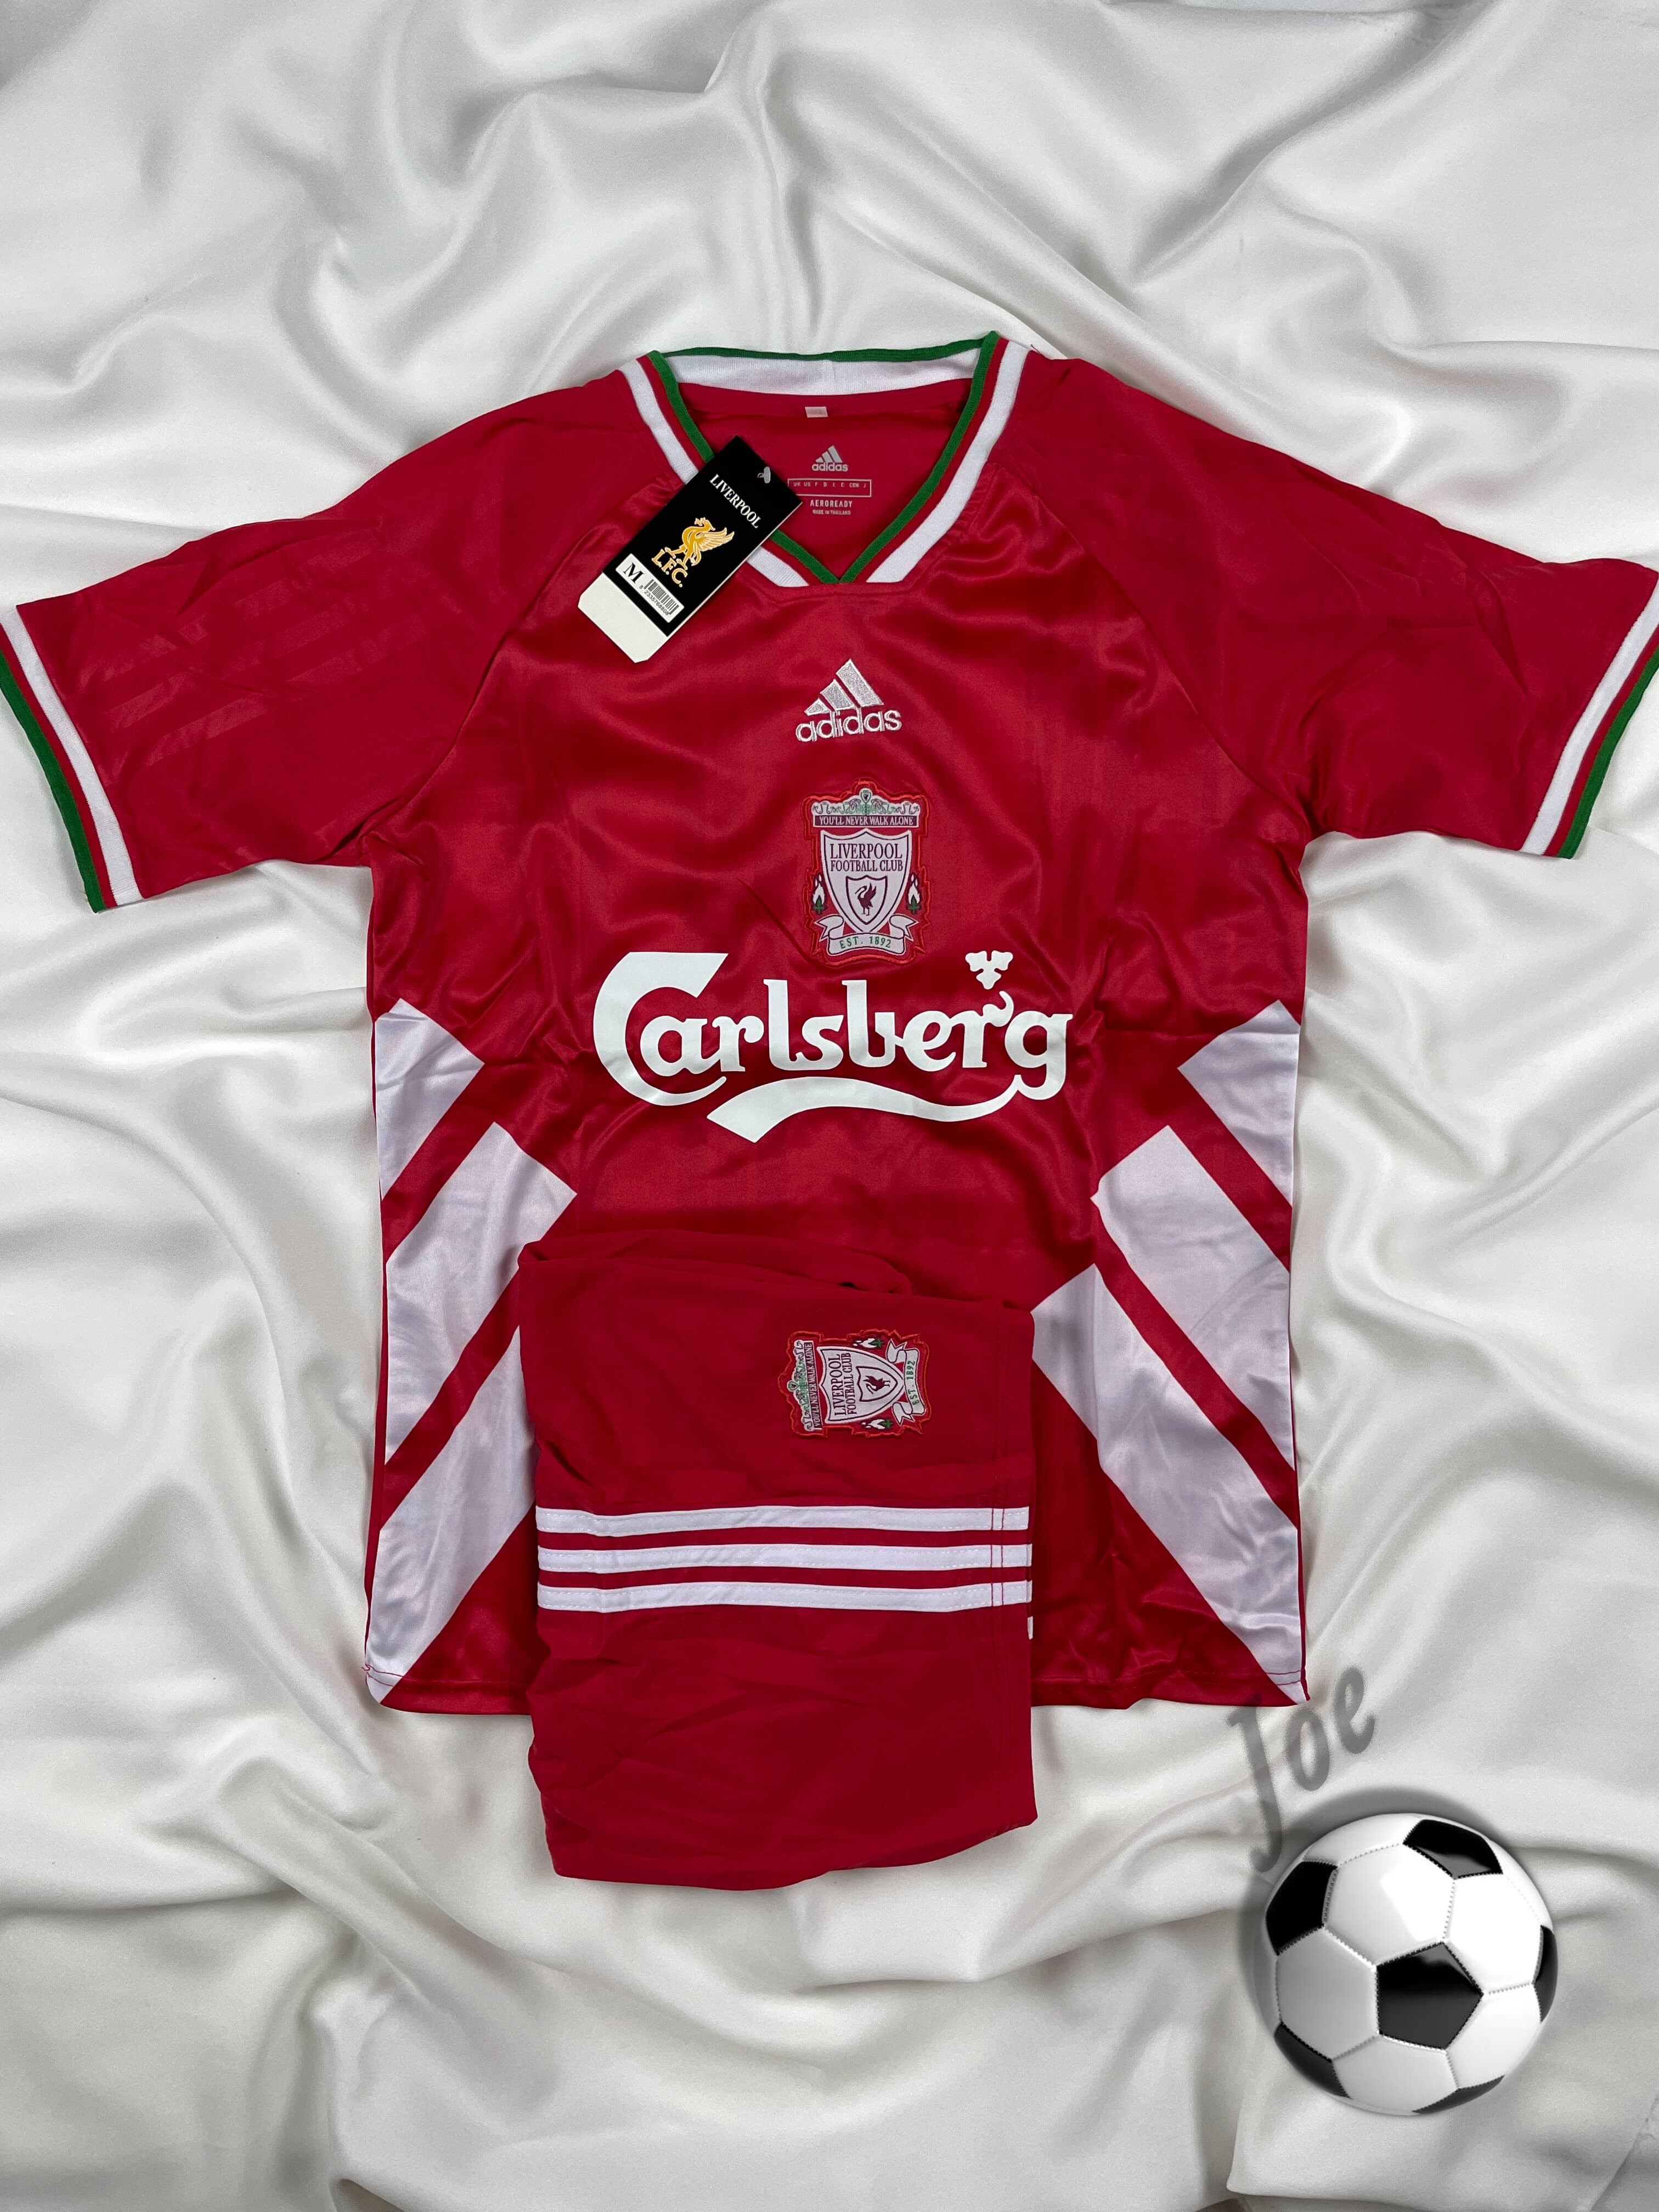 ชุดบอลย้อนยุค Liverpool (Red wt. White, 1993-1994) เสื้อบอลและกางเกงบอลผู้ชาย ปี 1993-1994